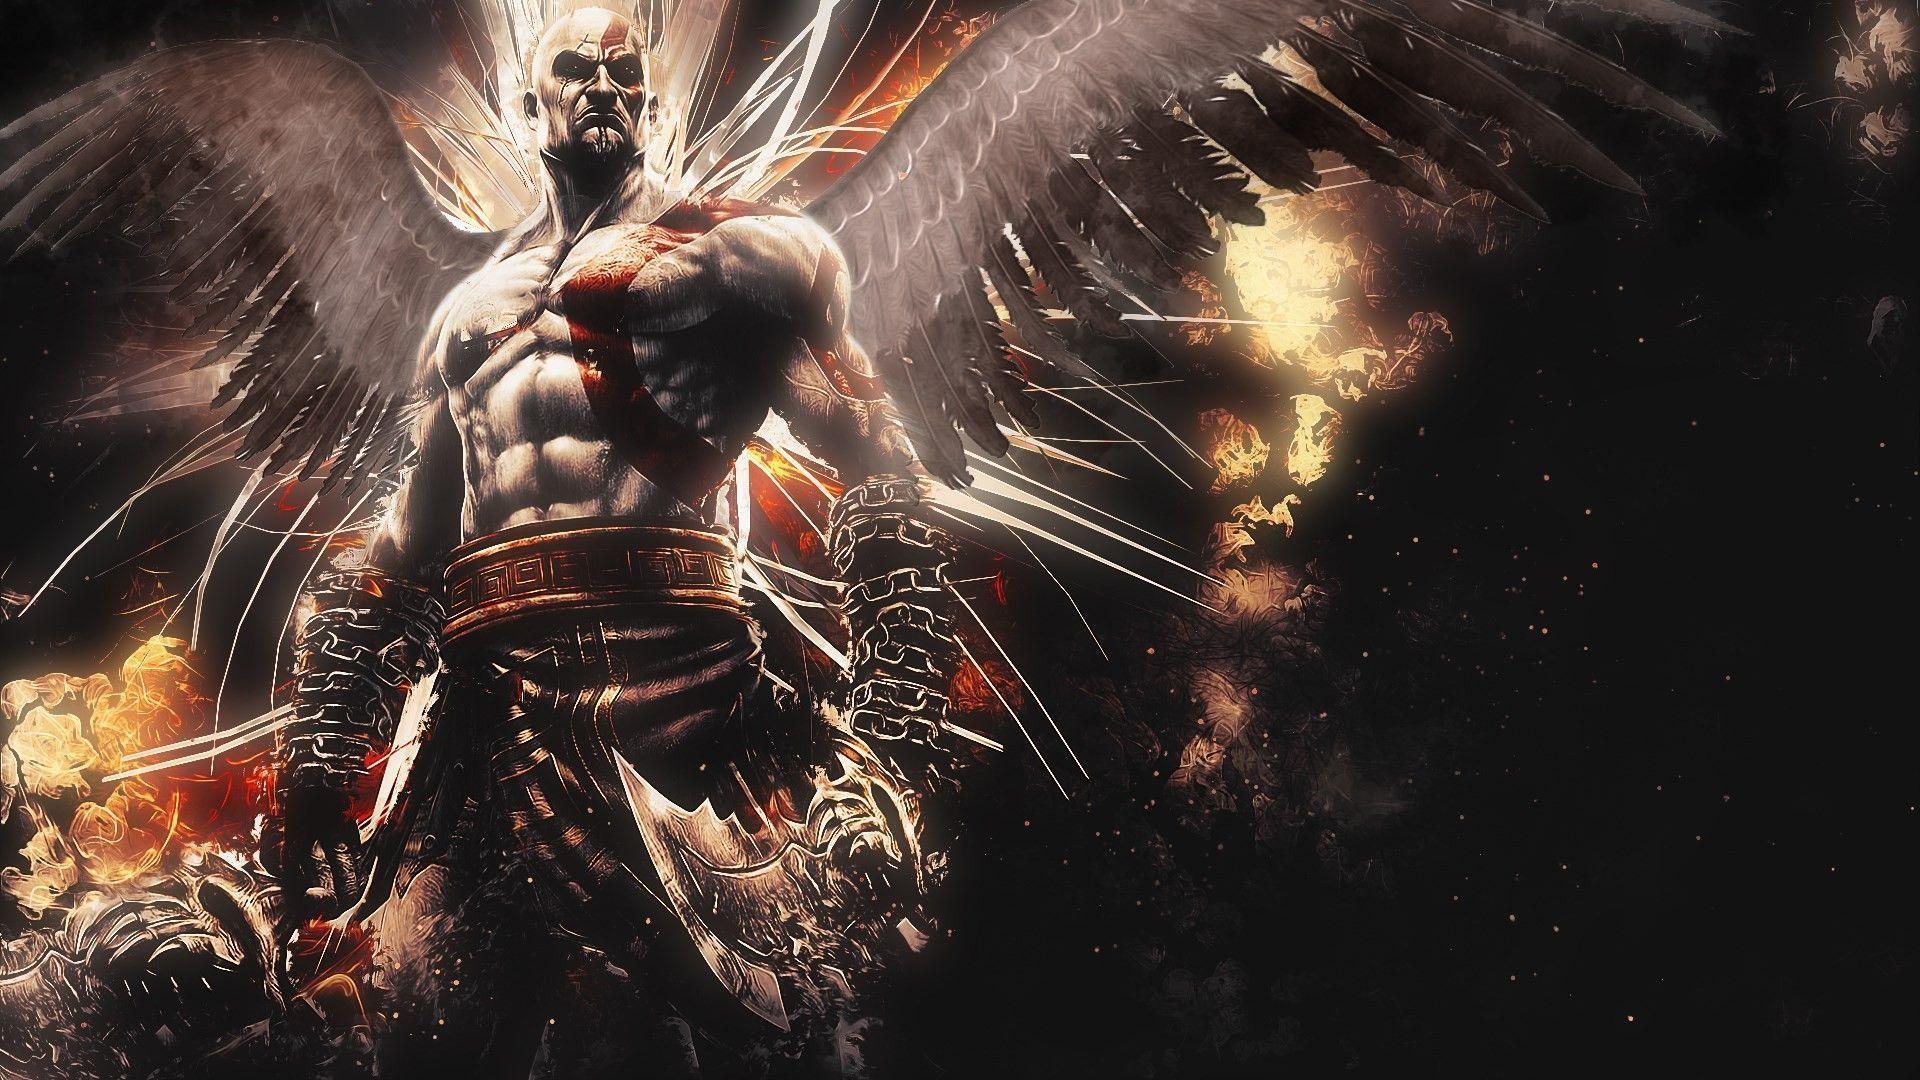 image For > God Of War Ascension Wallpaper Kratos